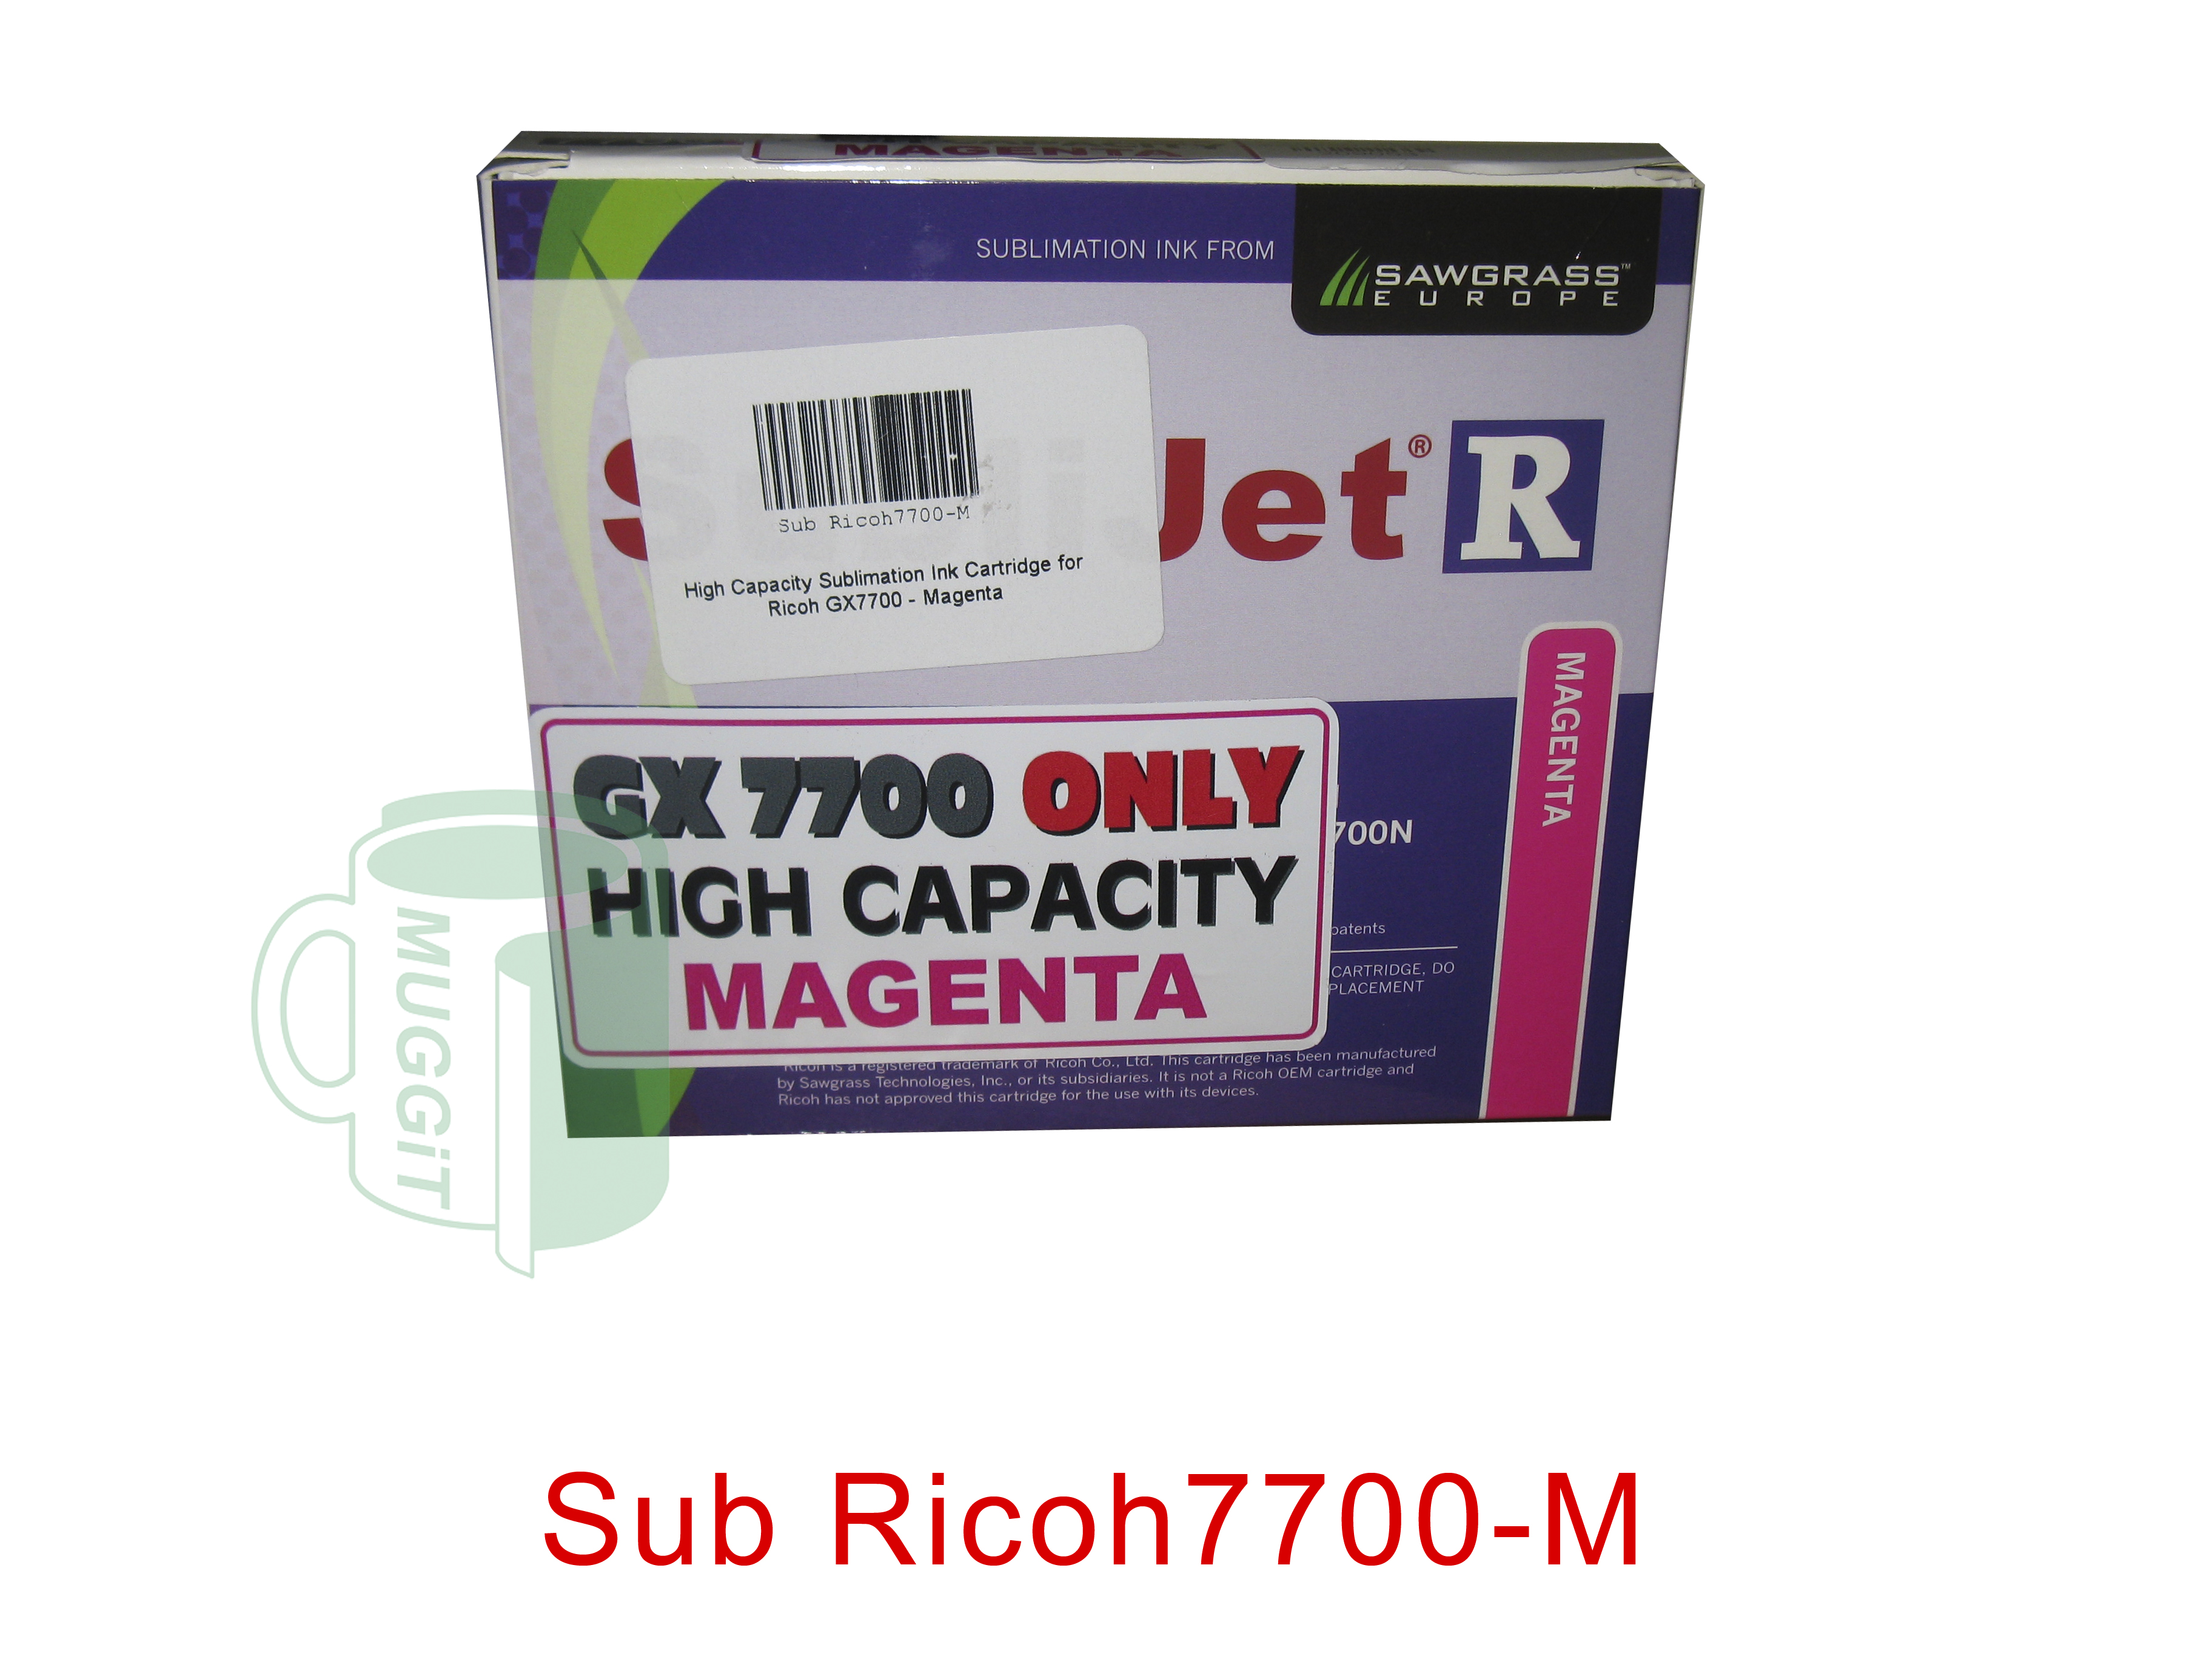 Sub Ricoh7700-M